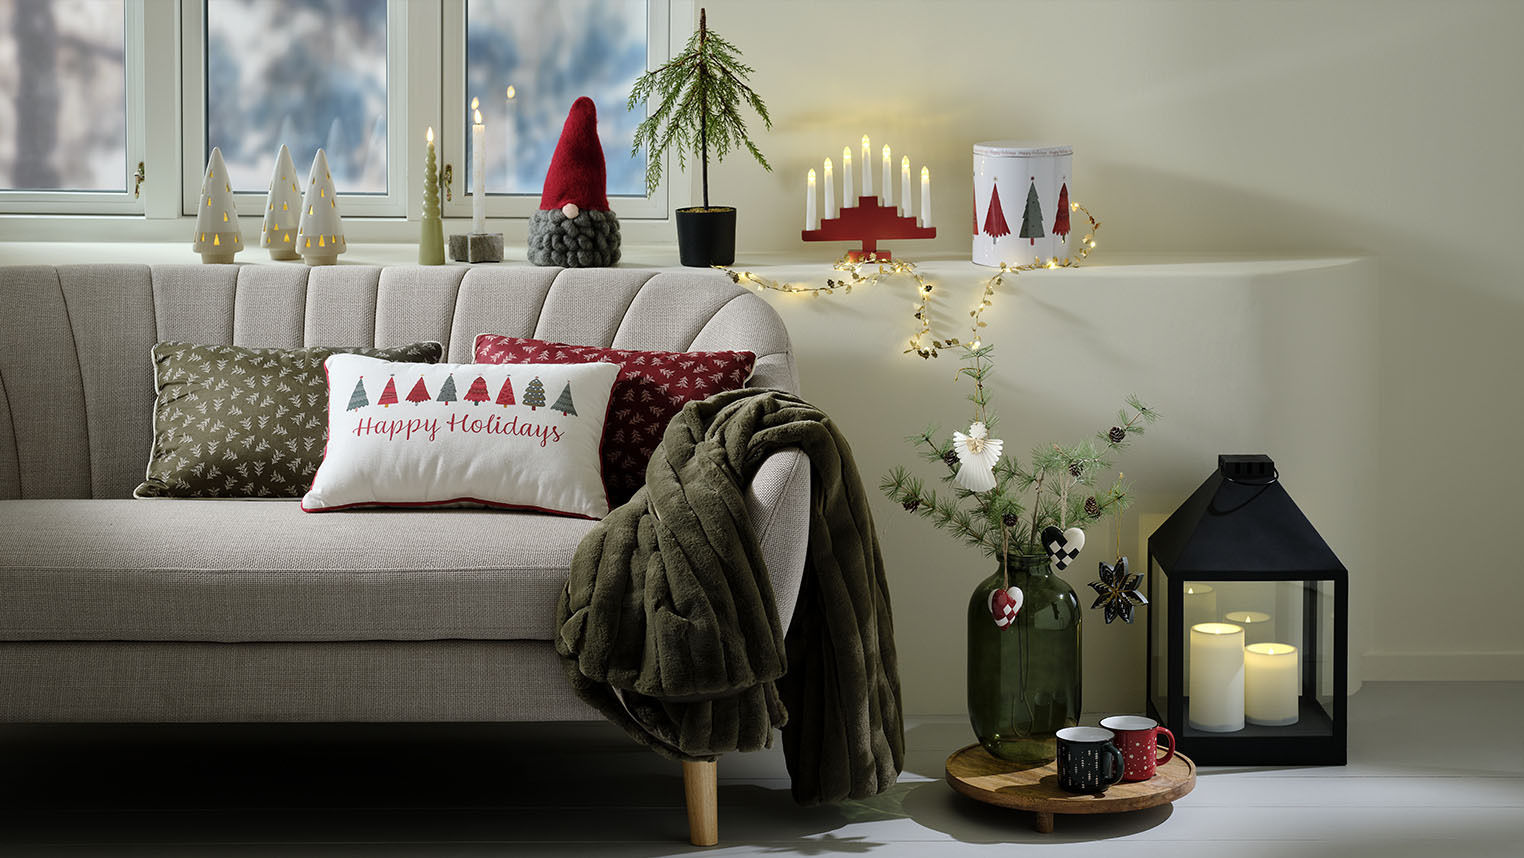 Soggiorno accogliente decorato con decorazioni natalizie scandinave